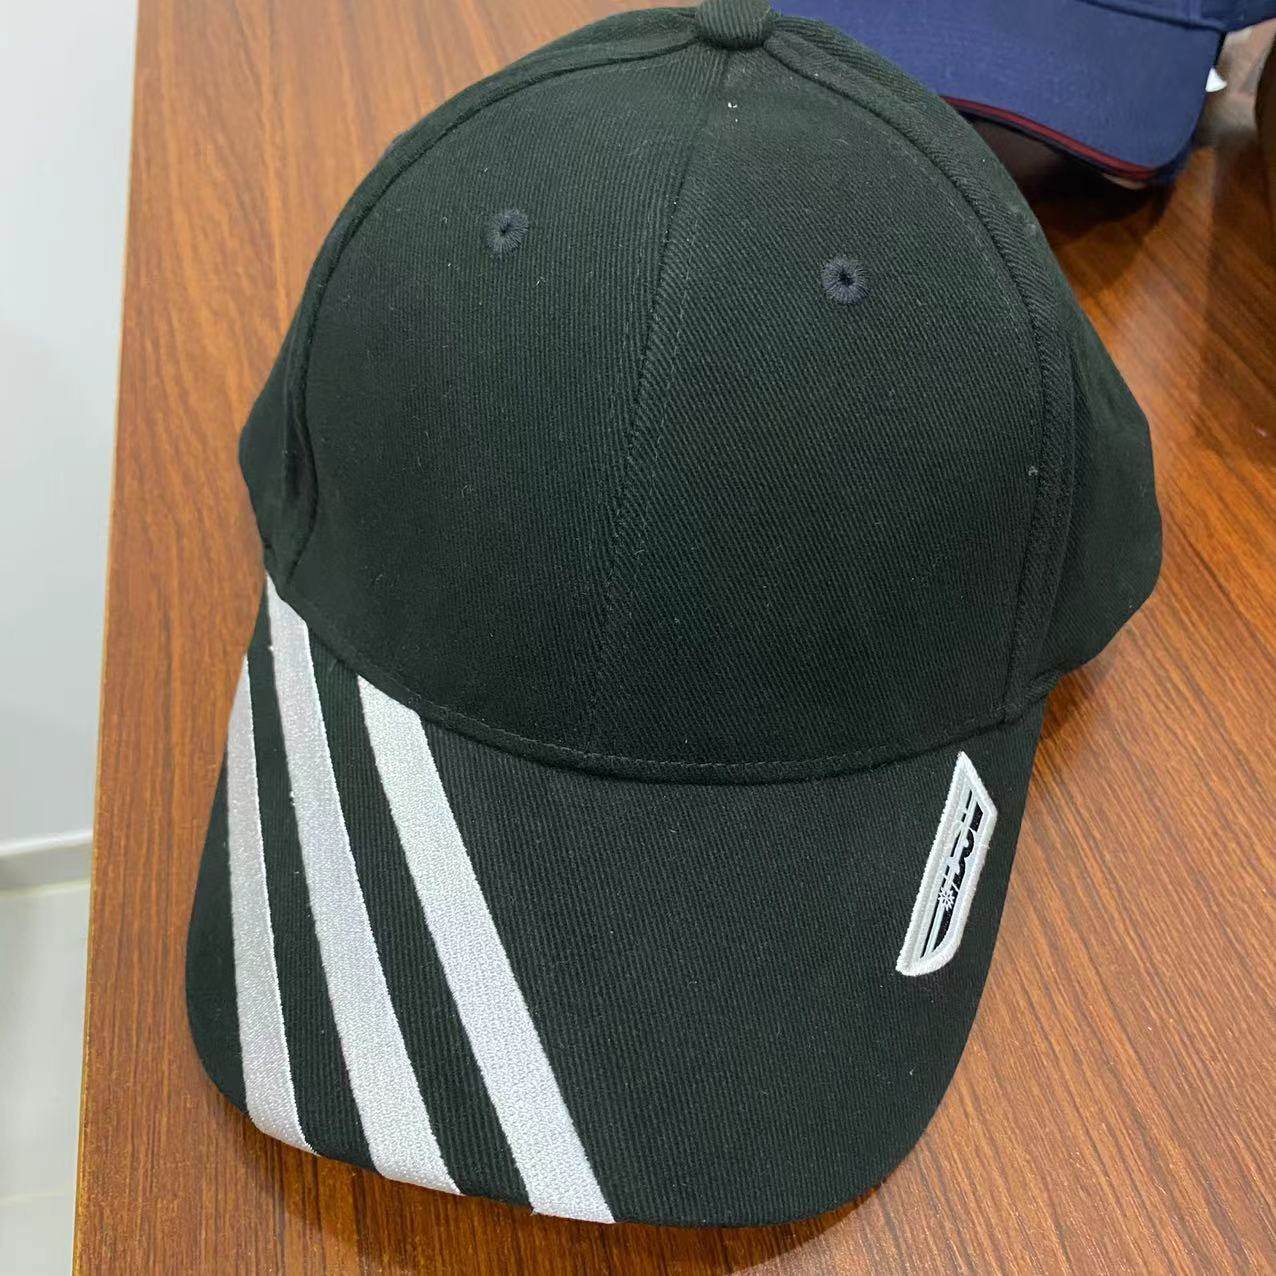 ADIDAS sample hat black